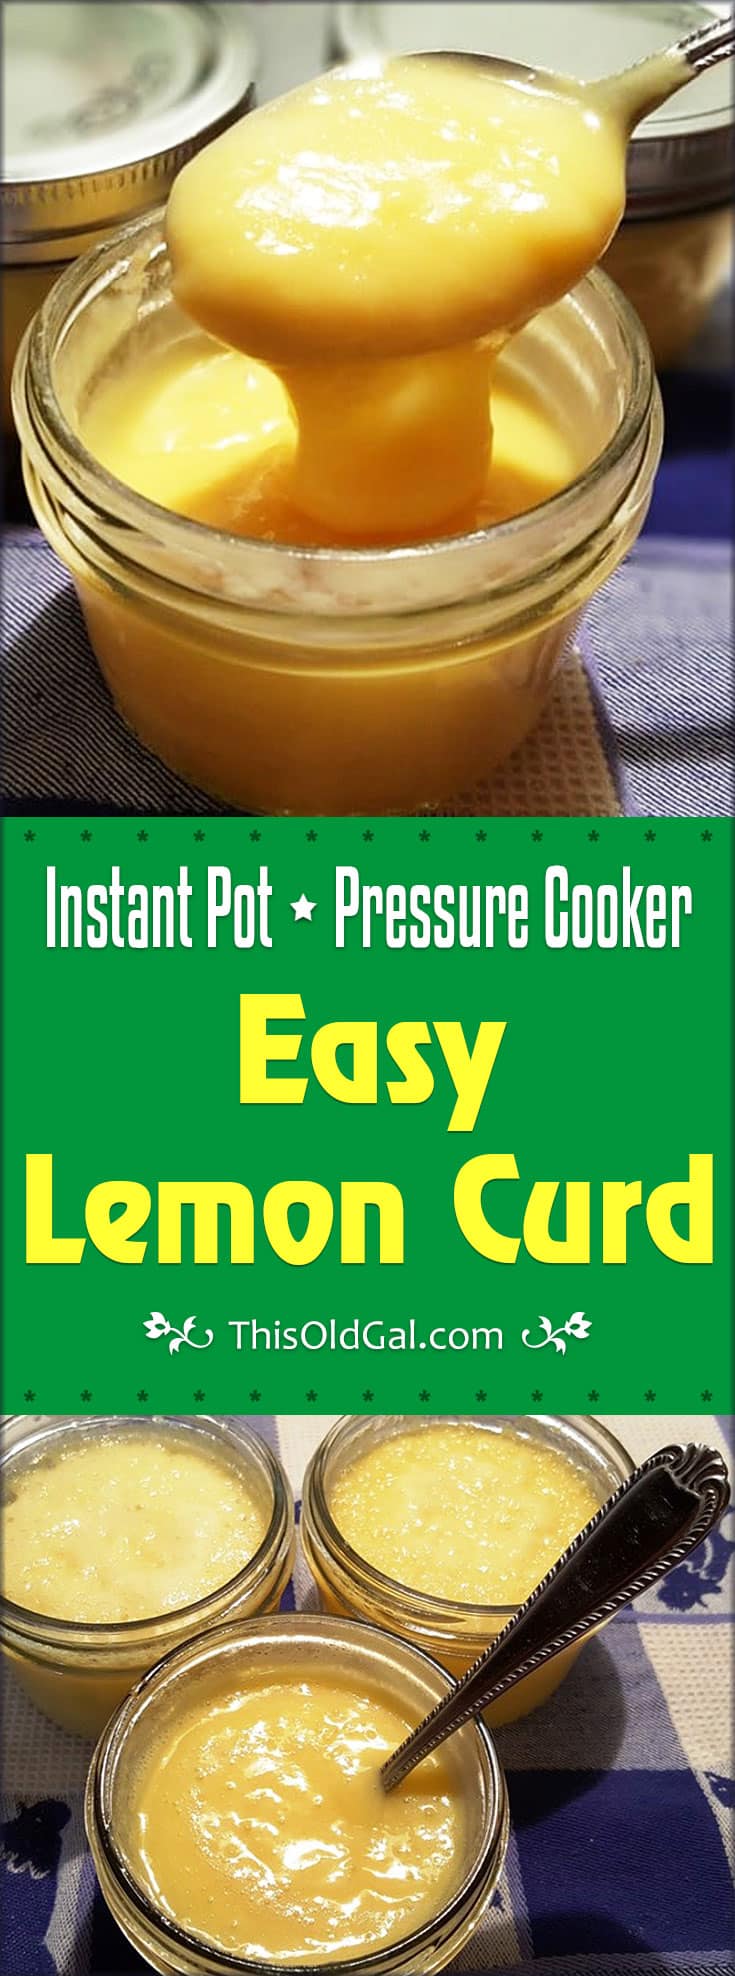 Pressure Cooker Easy Lemon Curd